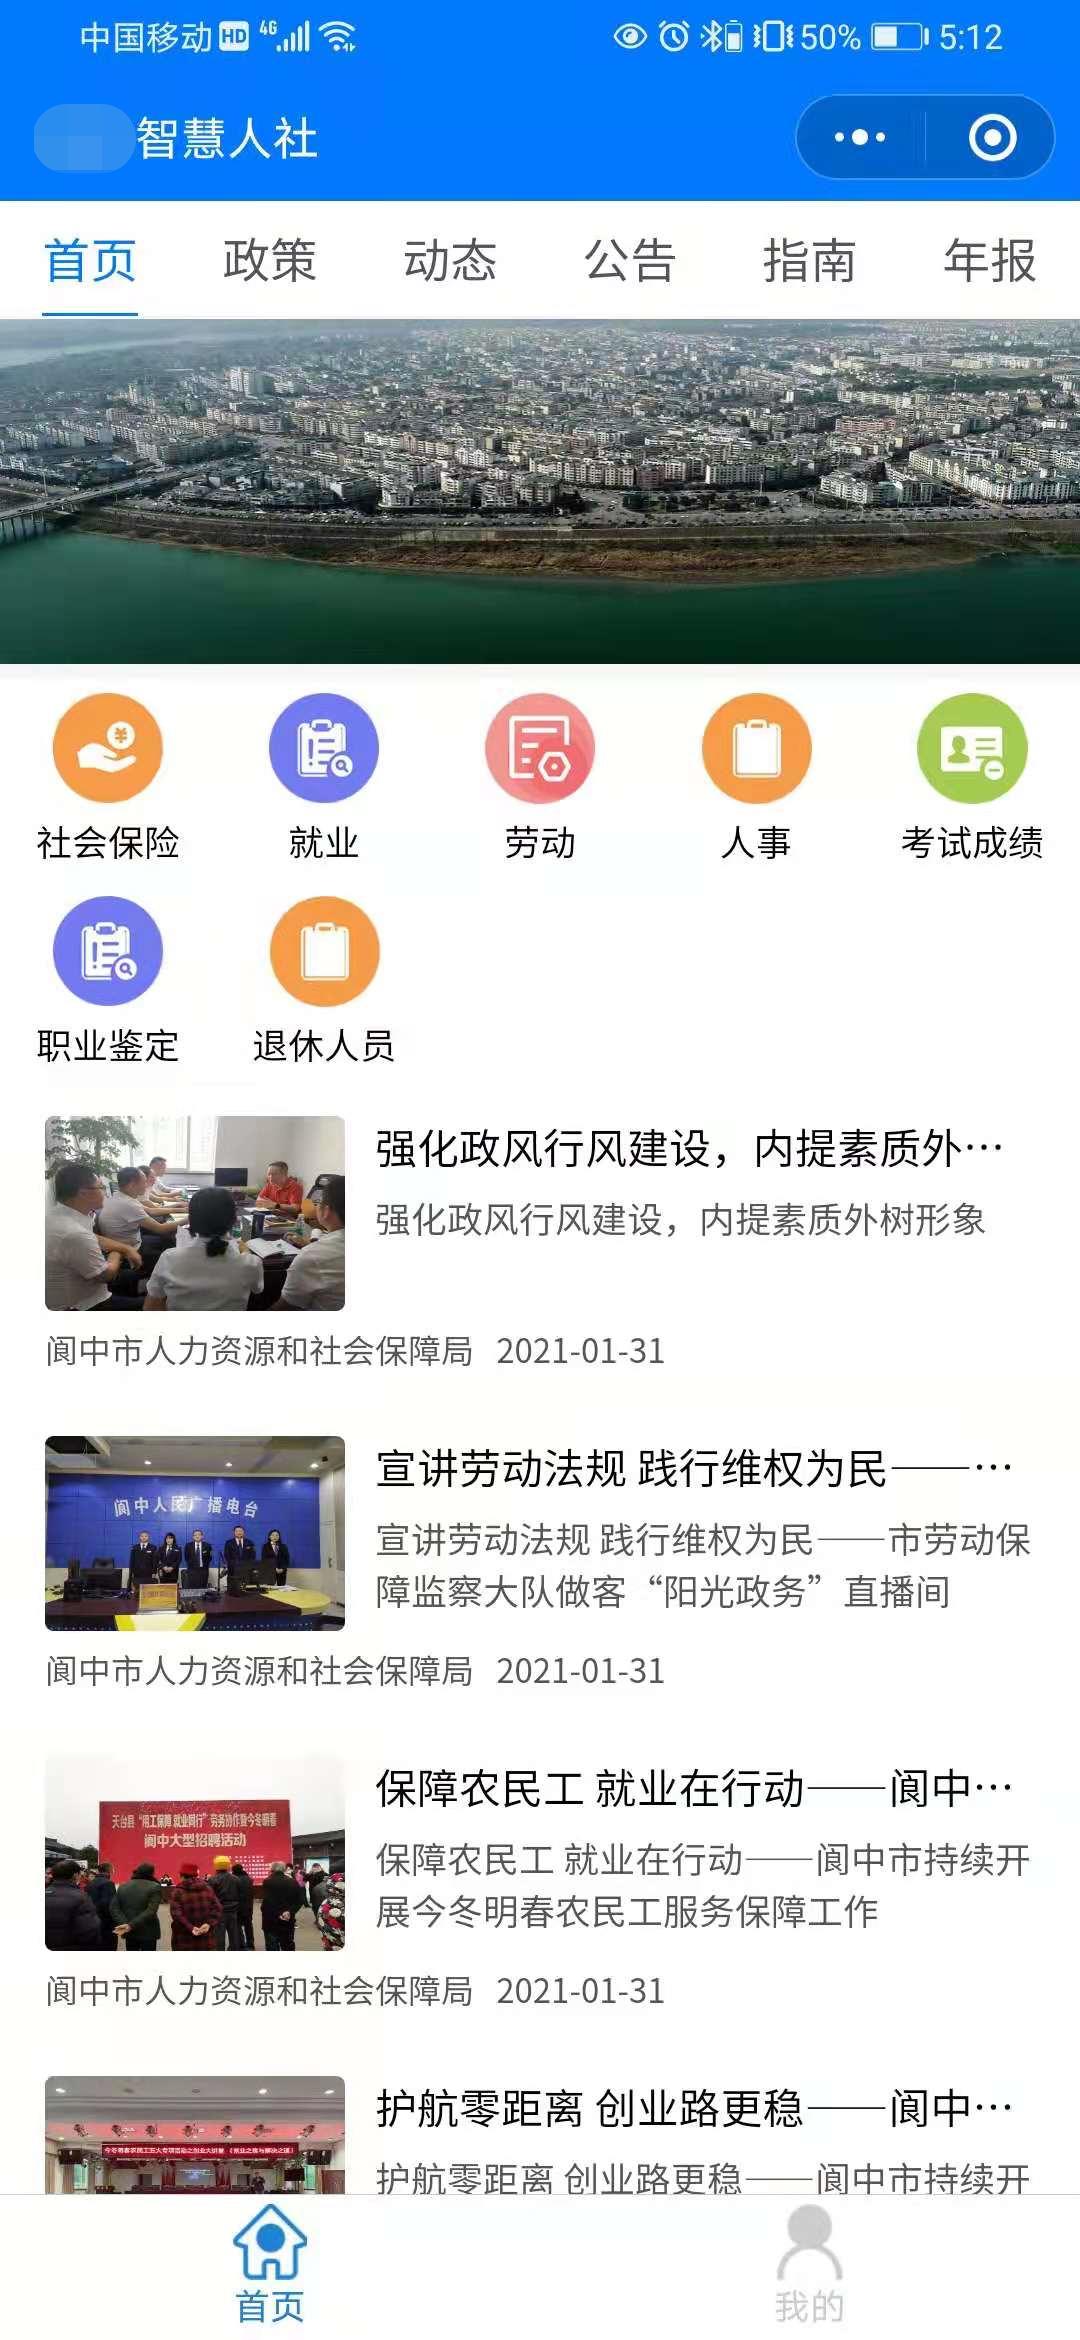 bwin·必赢(中国)唯一官方网站_产品4937